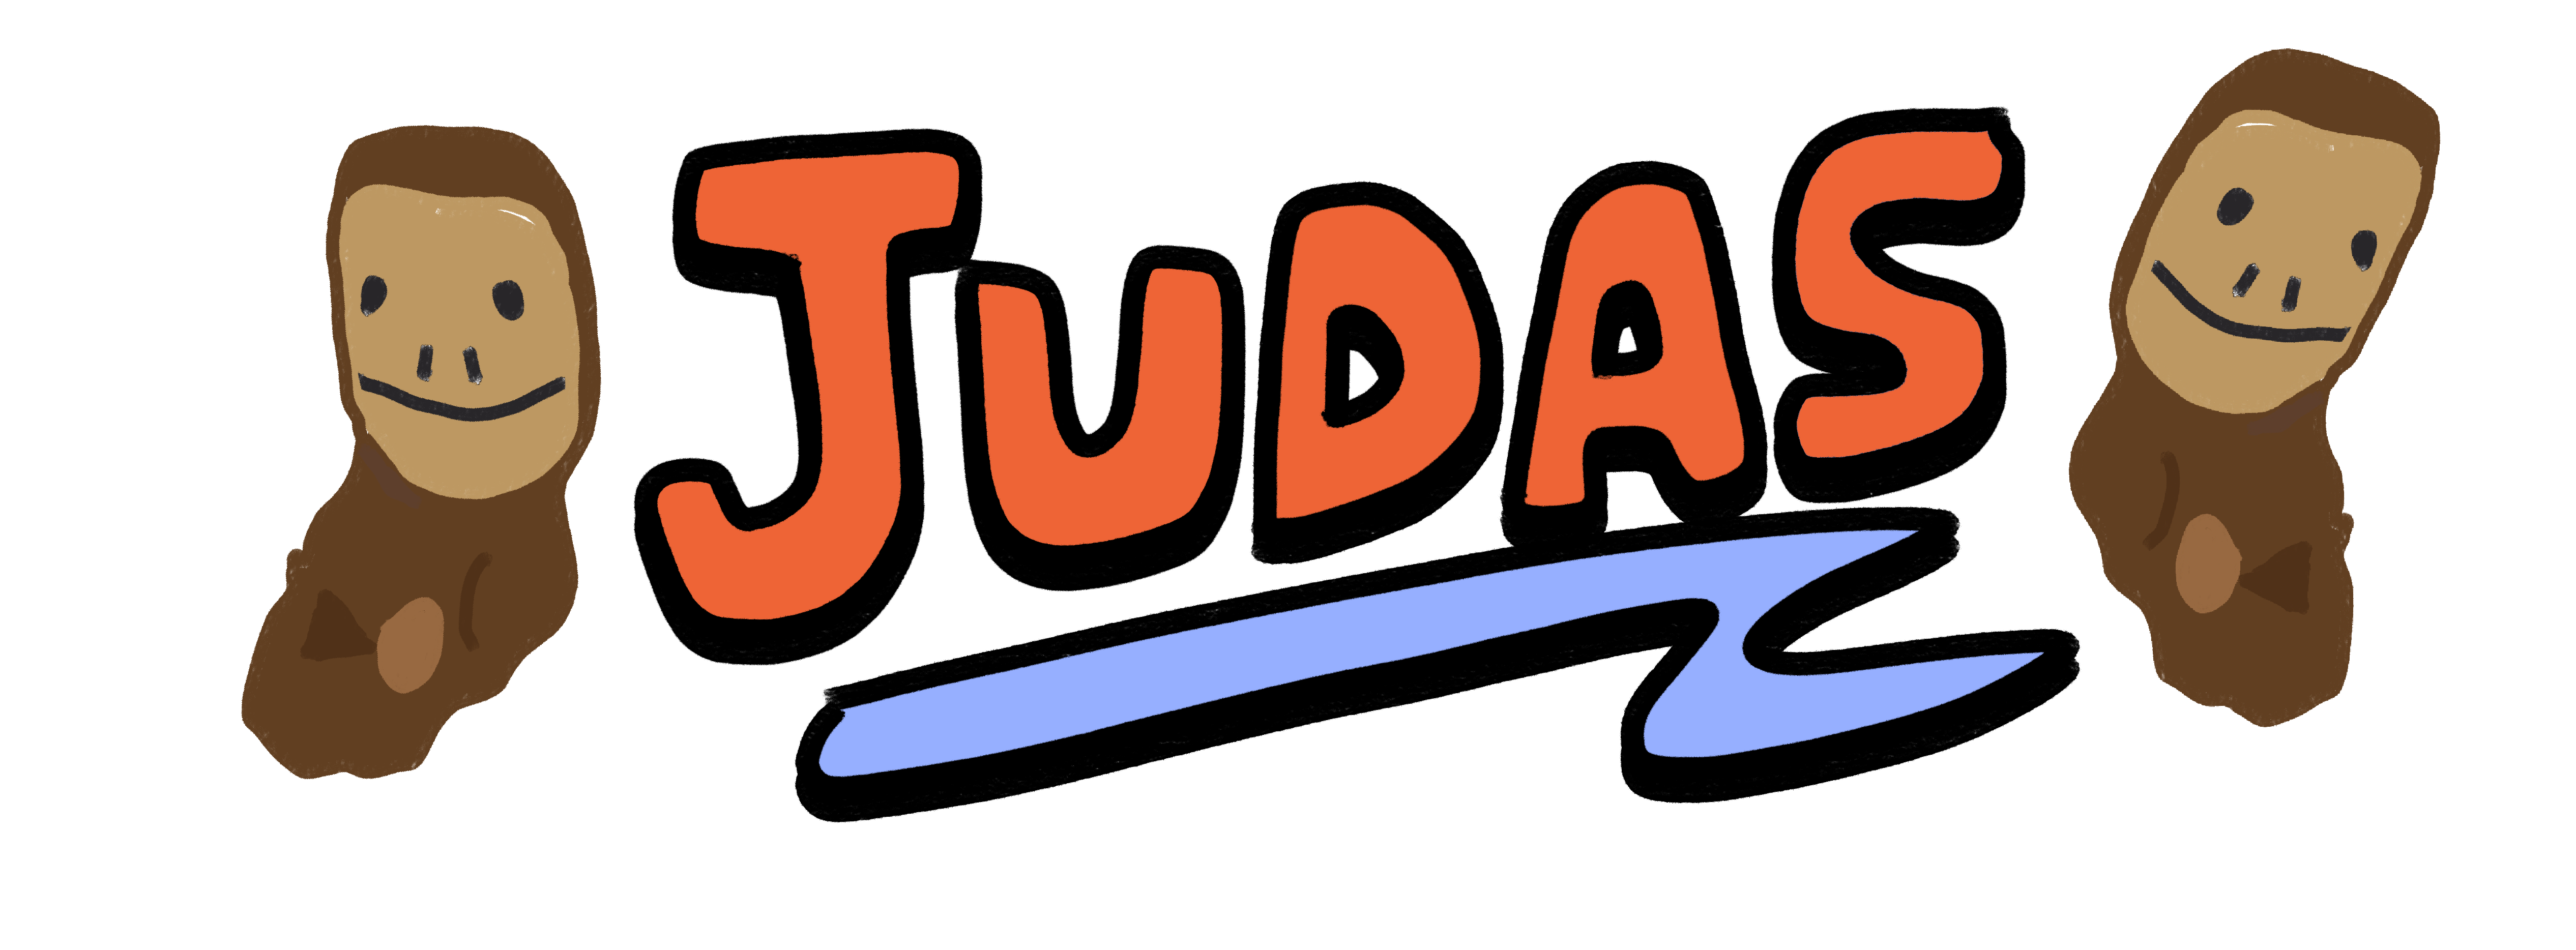 “Judas